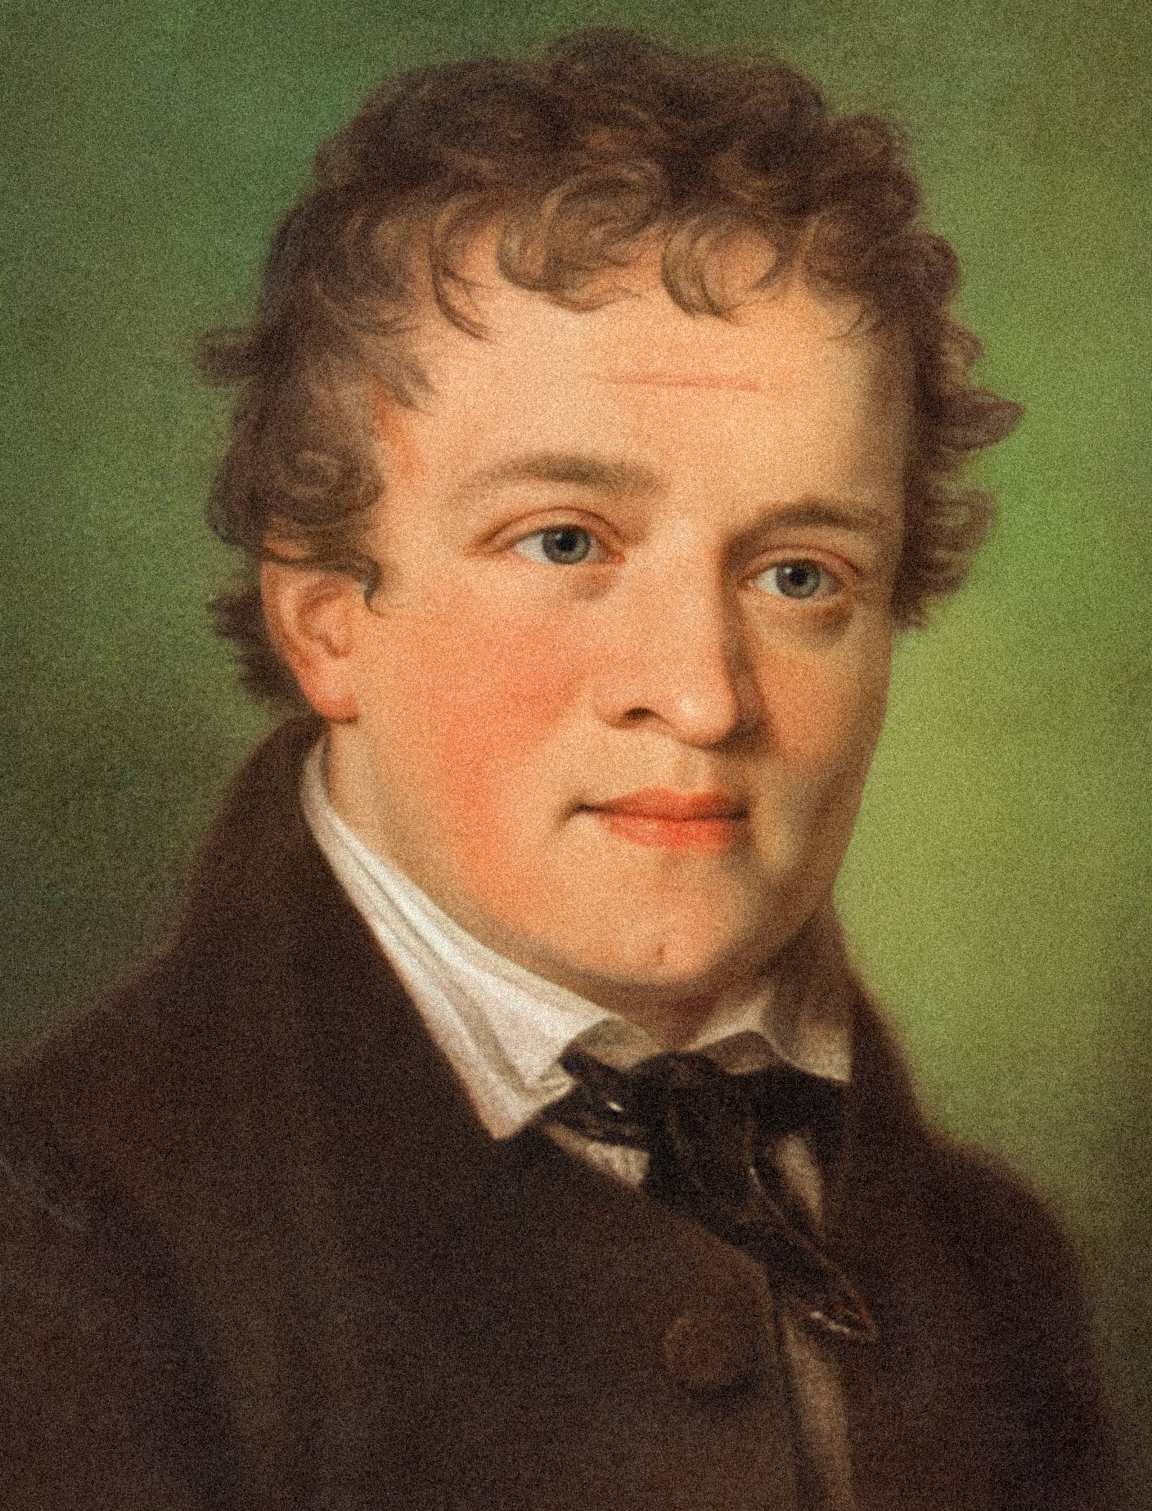 Kaspar Hauser: El niño no identificado de la década de 1820 parece ser asesinado misteriosamente solo 5 años después 2